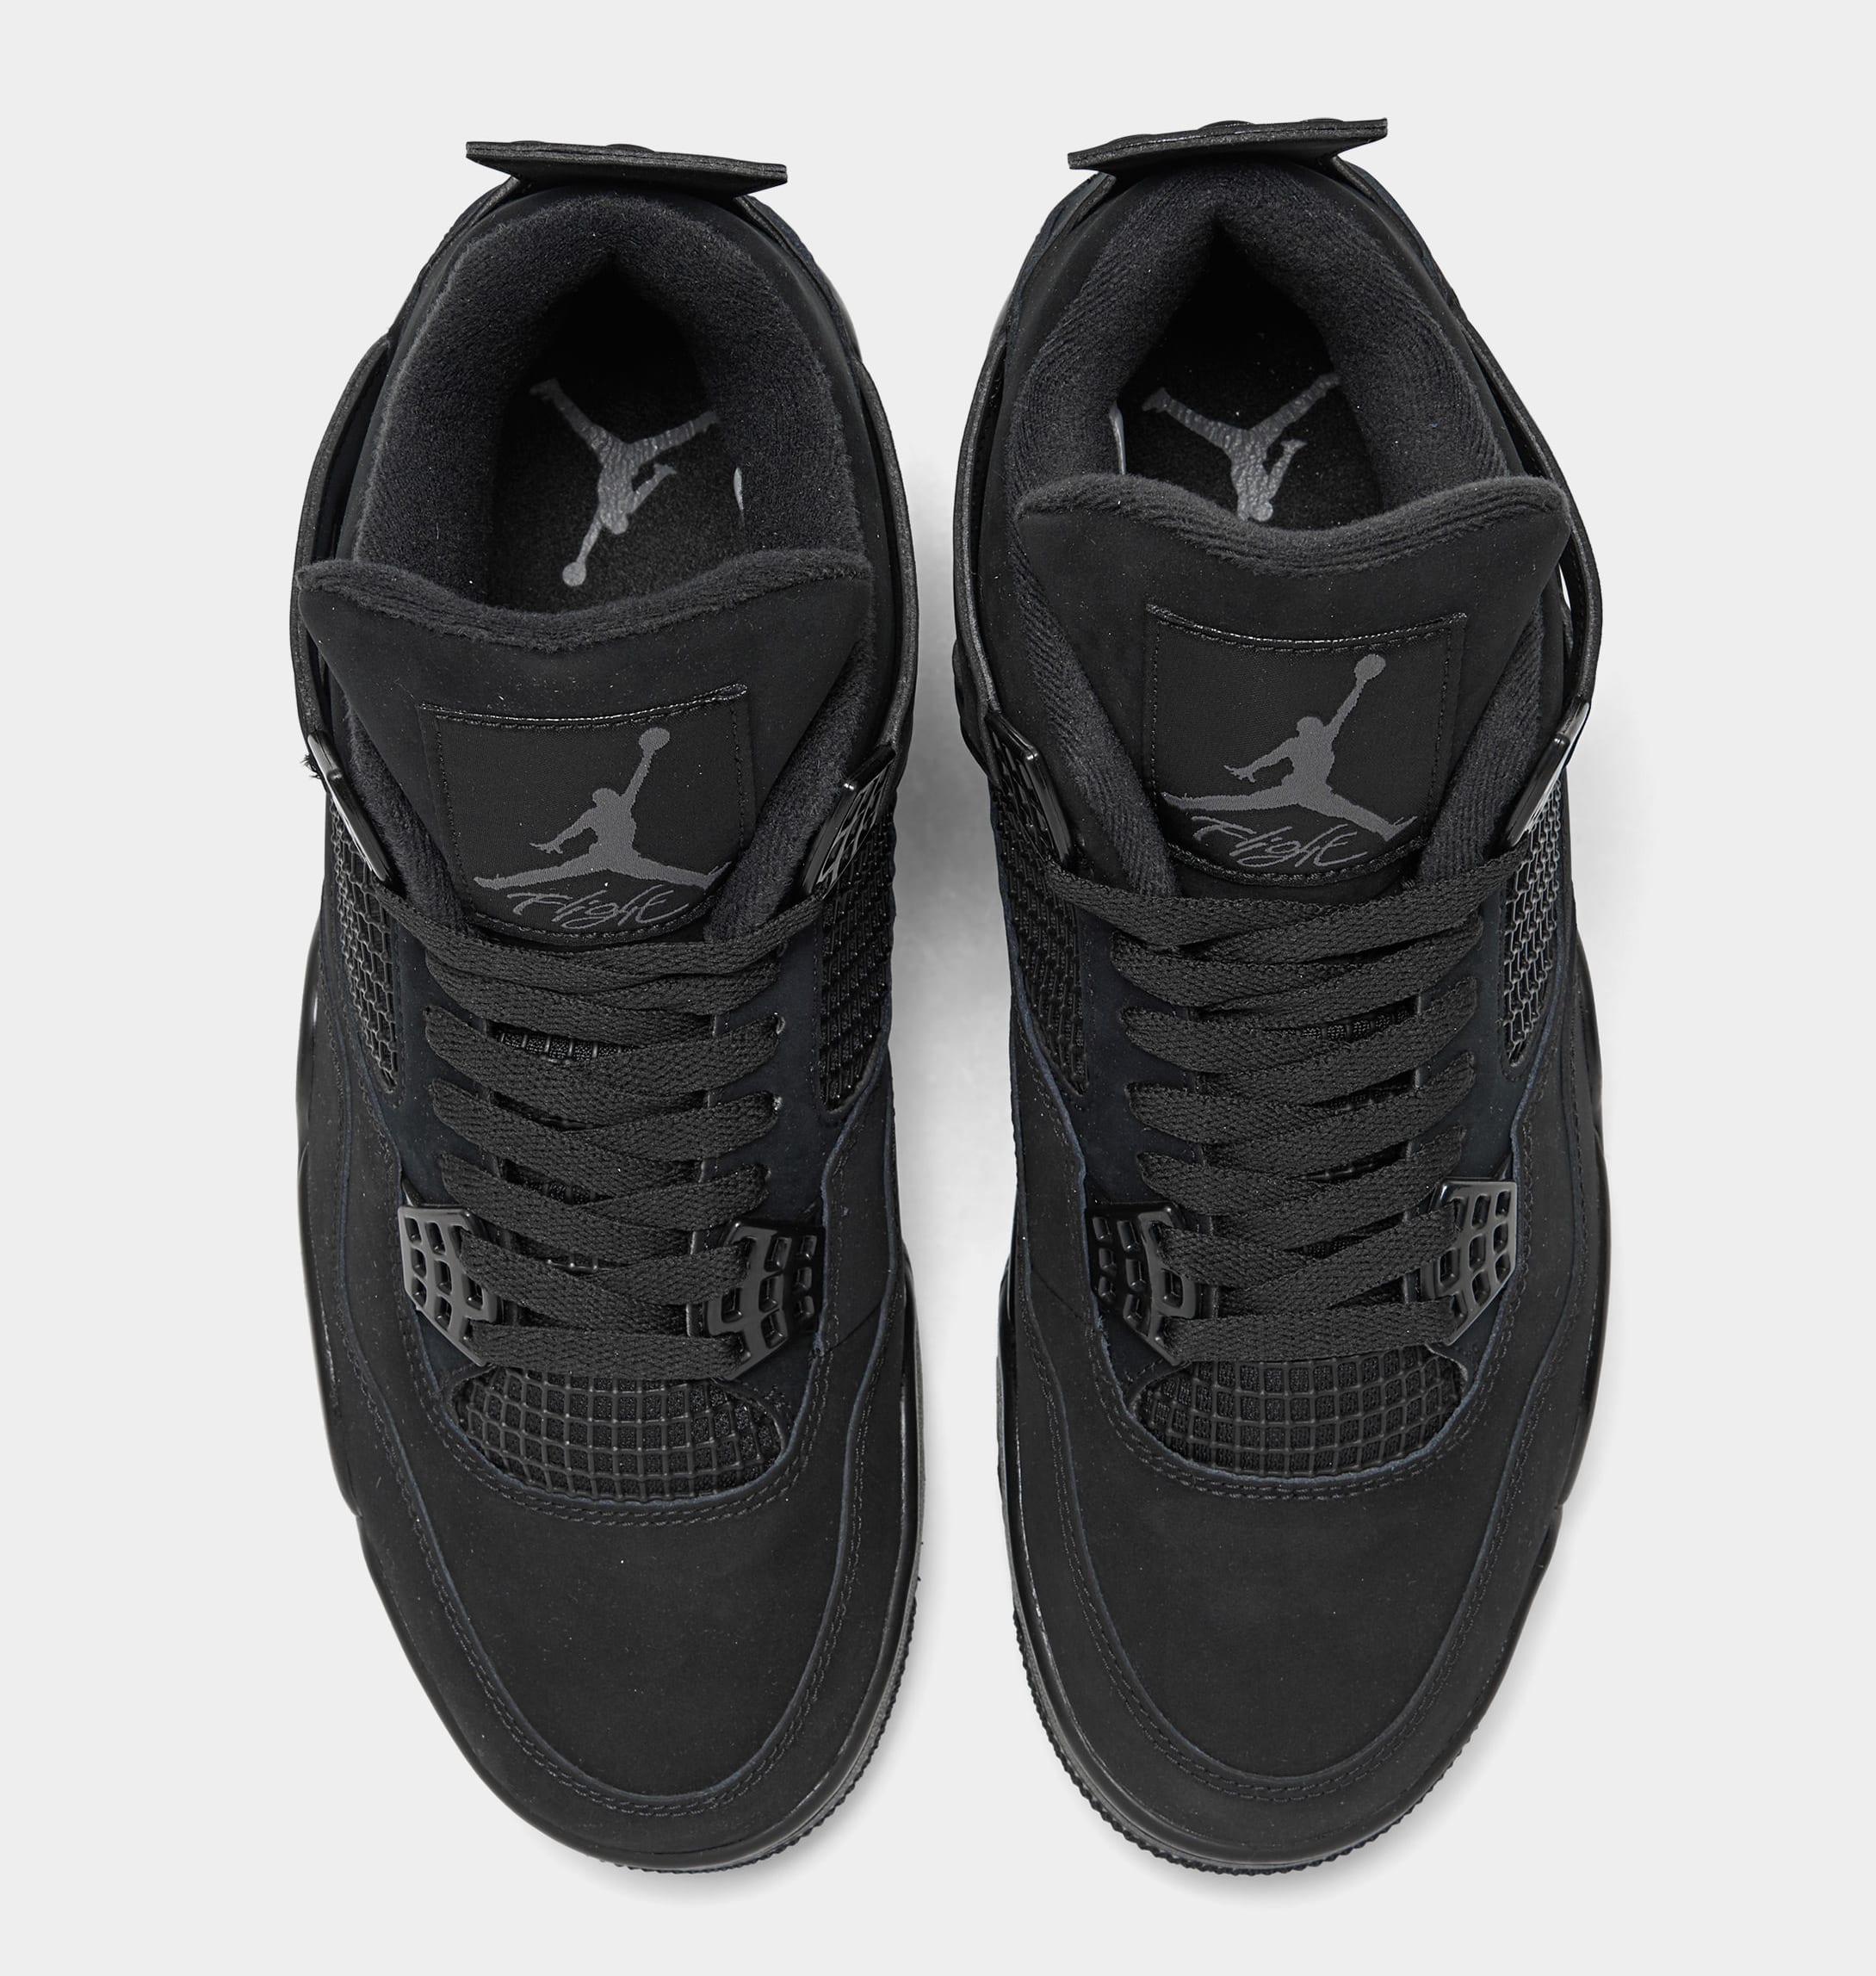 Air Jordan 4 Retro 'Black Cat' Release Date CU1110010 Sole Collector